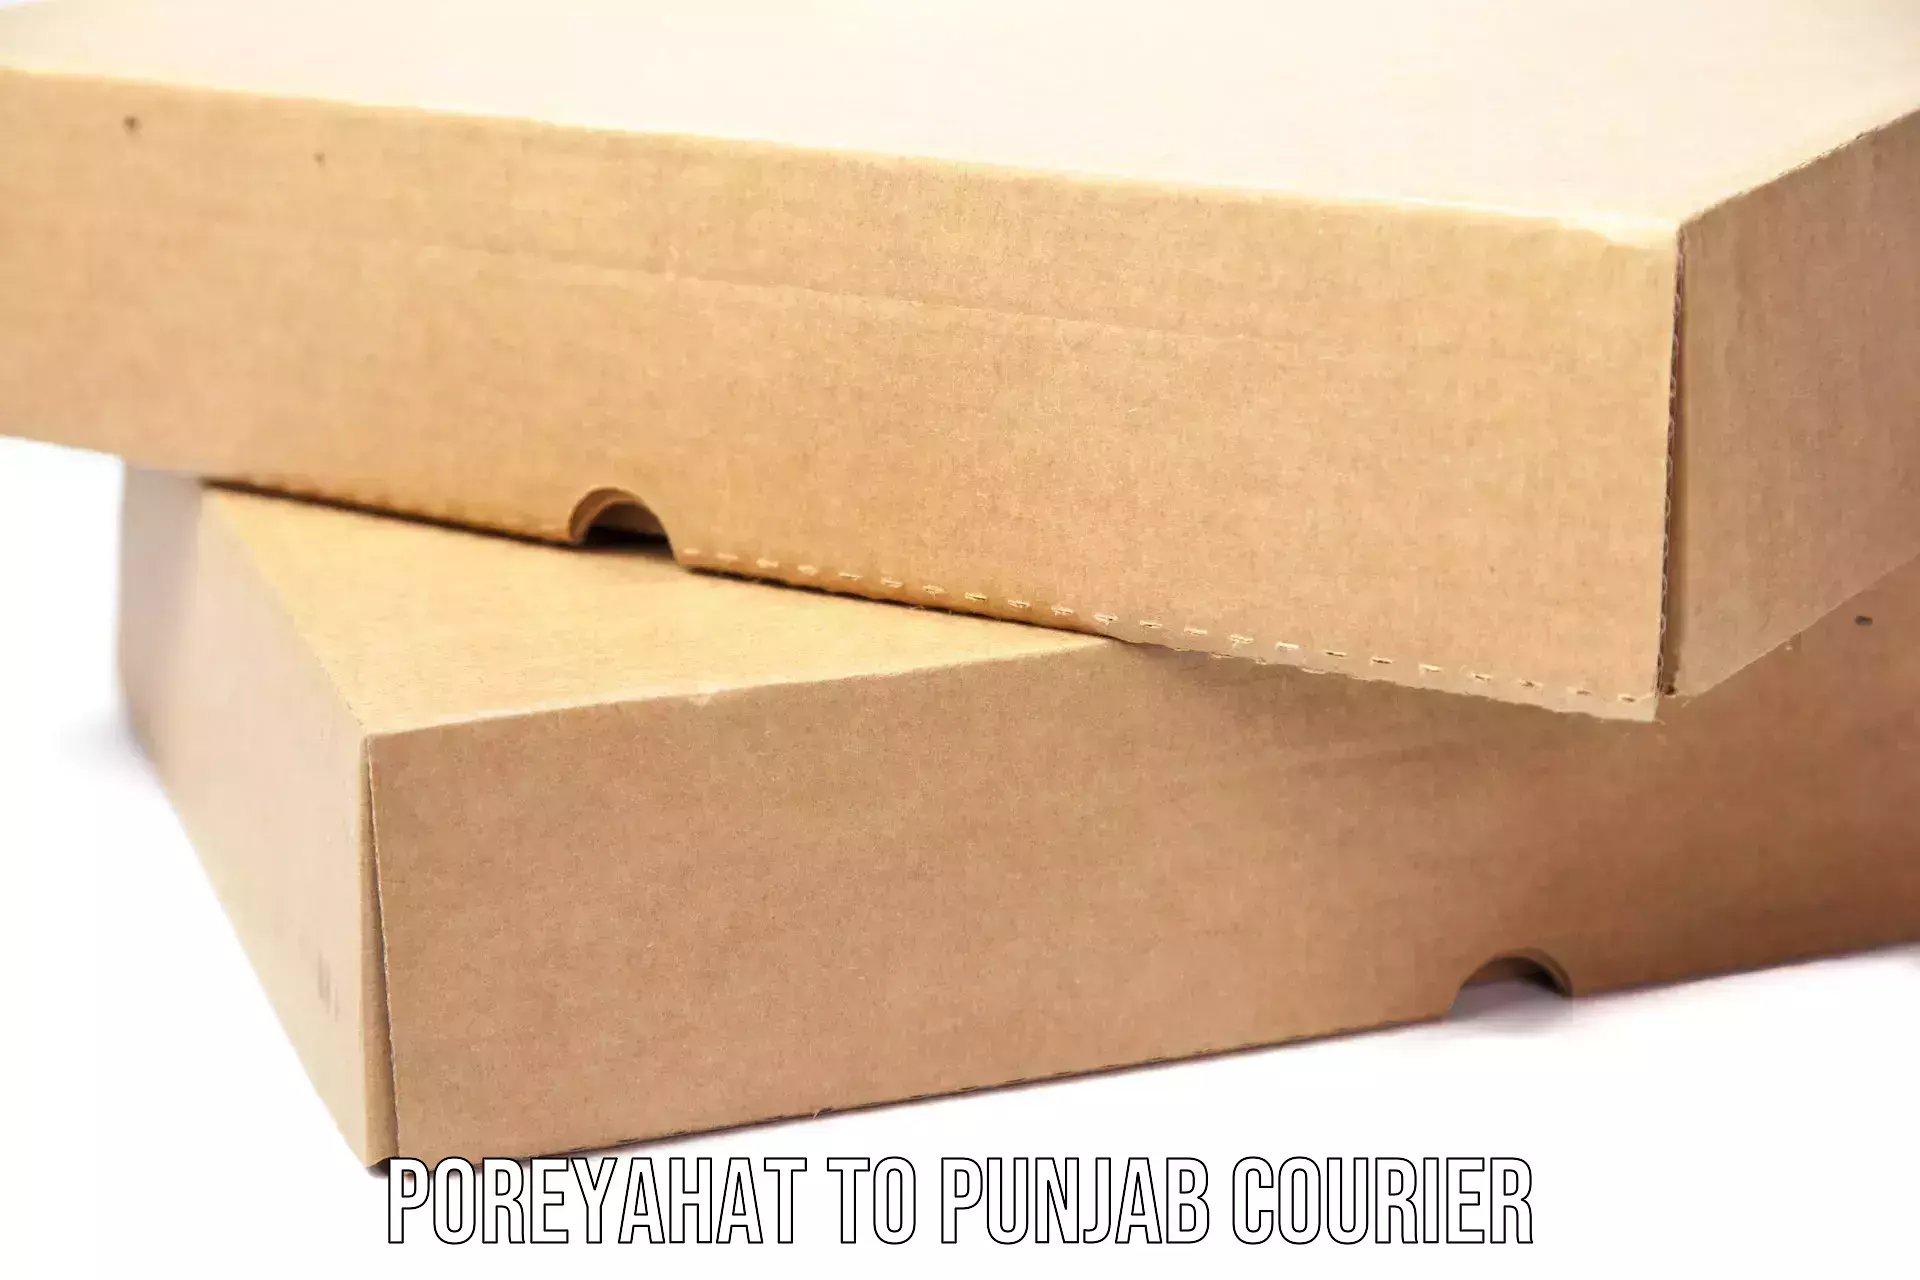 Courier service comparison Poreyahat to Raikot